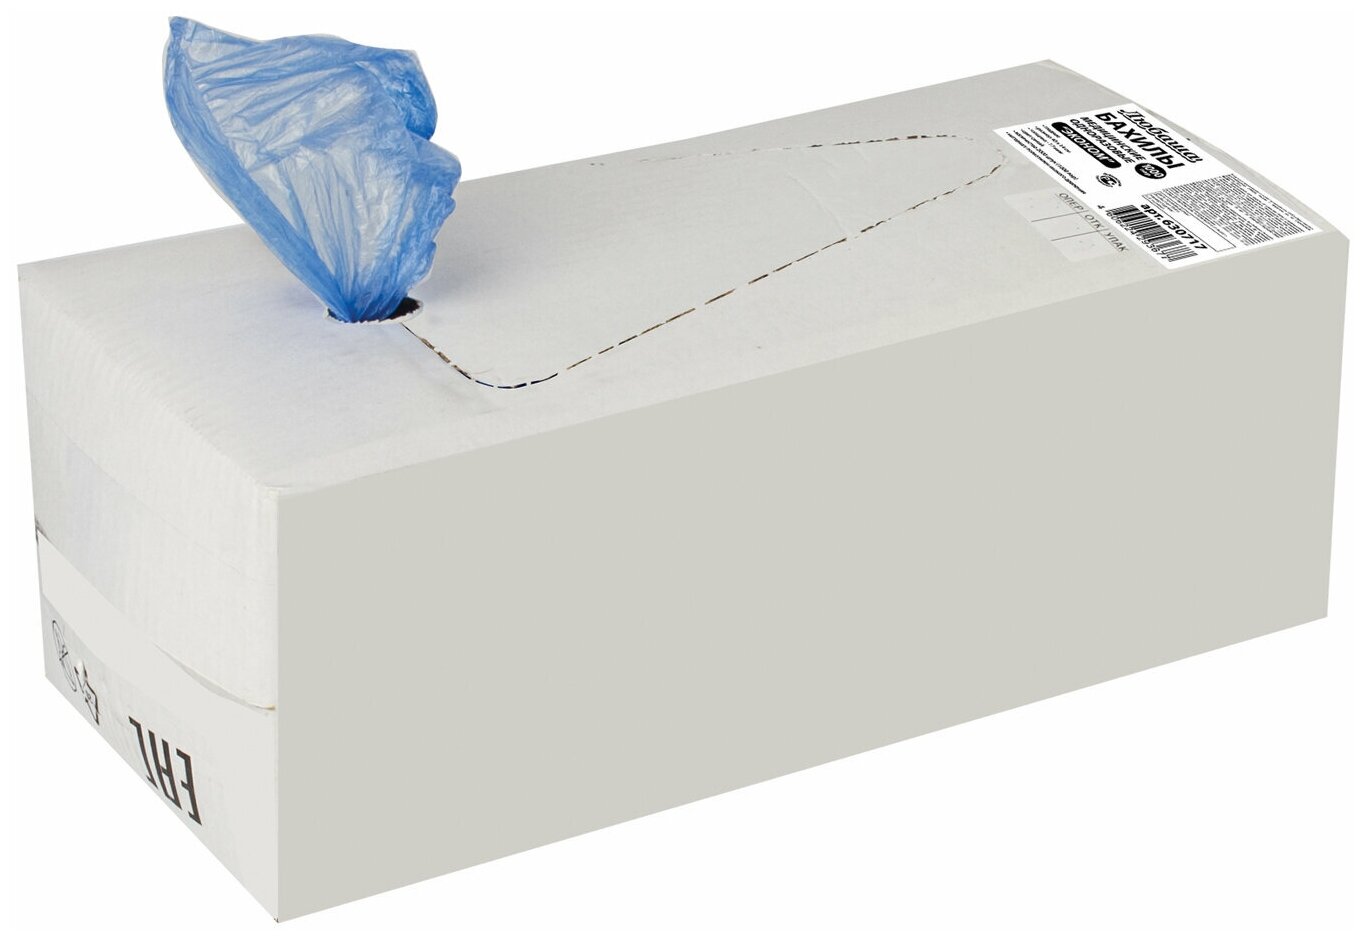 Бахилы комплект 2000 шт. (1000 пар) в упаковке, эконом, размер 40х14 см, 1,8 г, ПНД, любаша, 630717